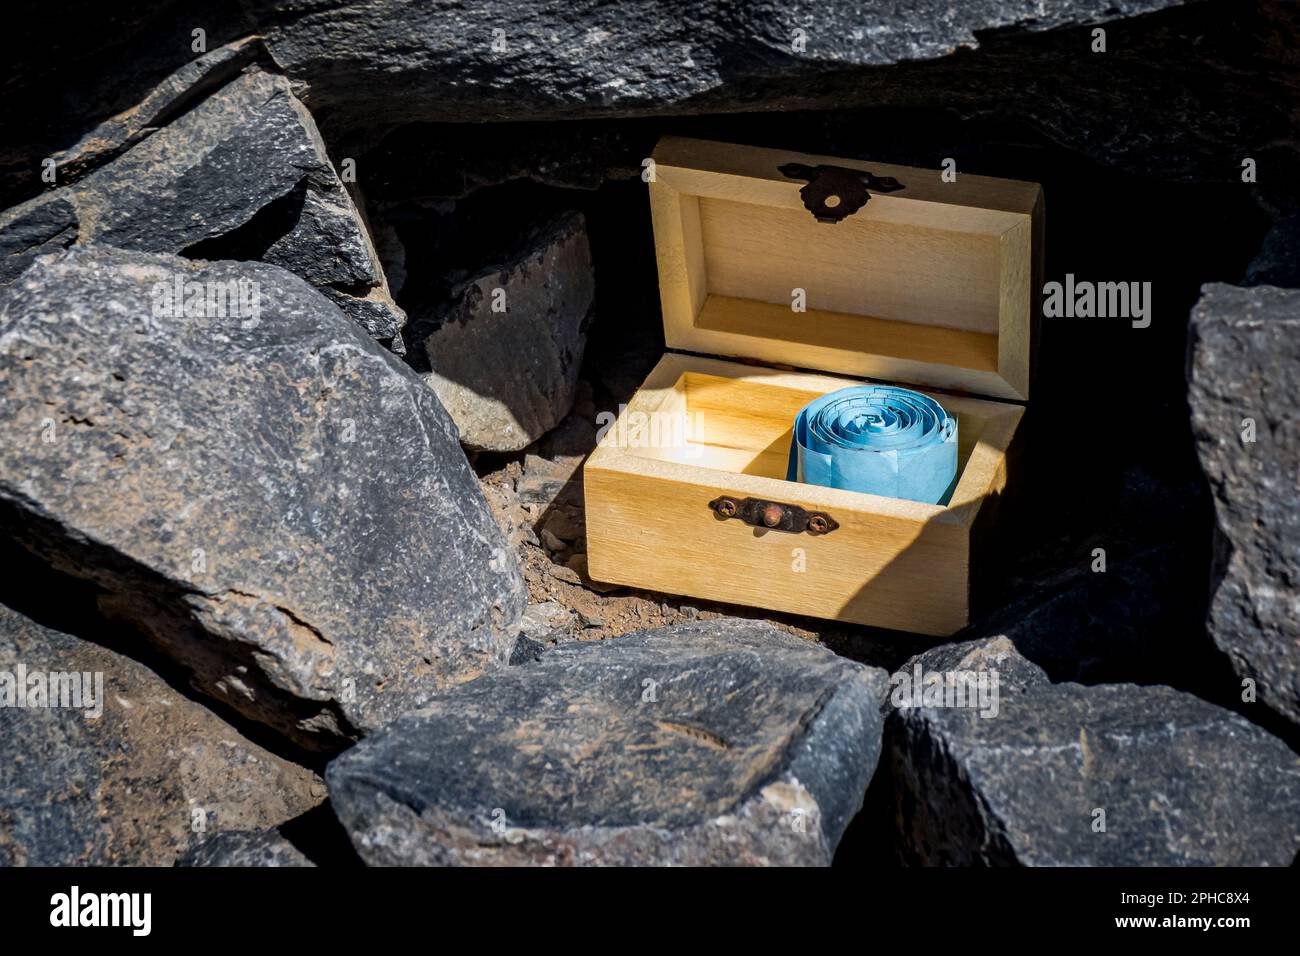 Nahaufnahme einer offenen hölzernen Geocaching-Schatztruhe mit einem blau gerollten Logbuch befindet sich versteckt in einem kleinen Loch inmitten schwarzer Steine. Stockfoto